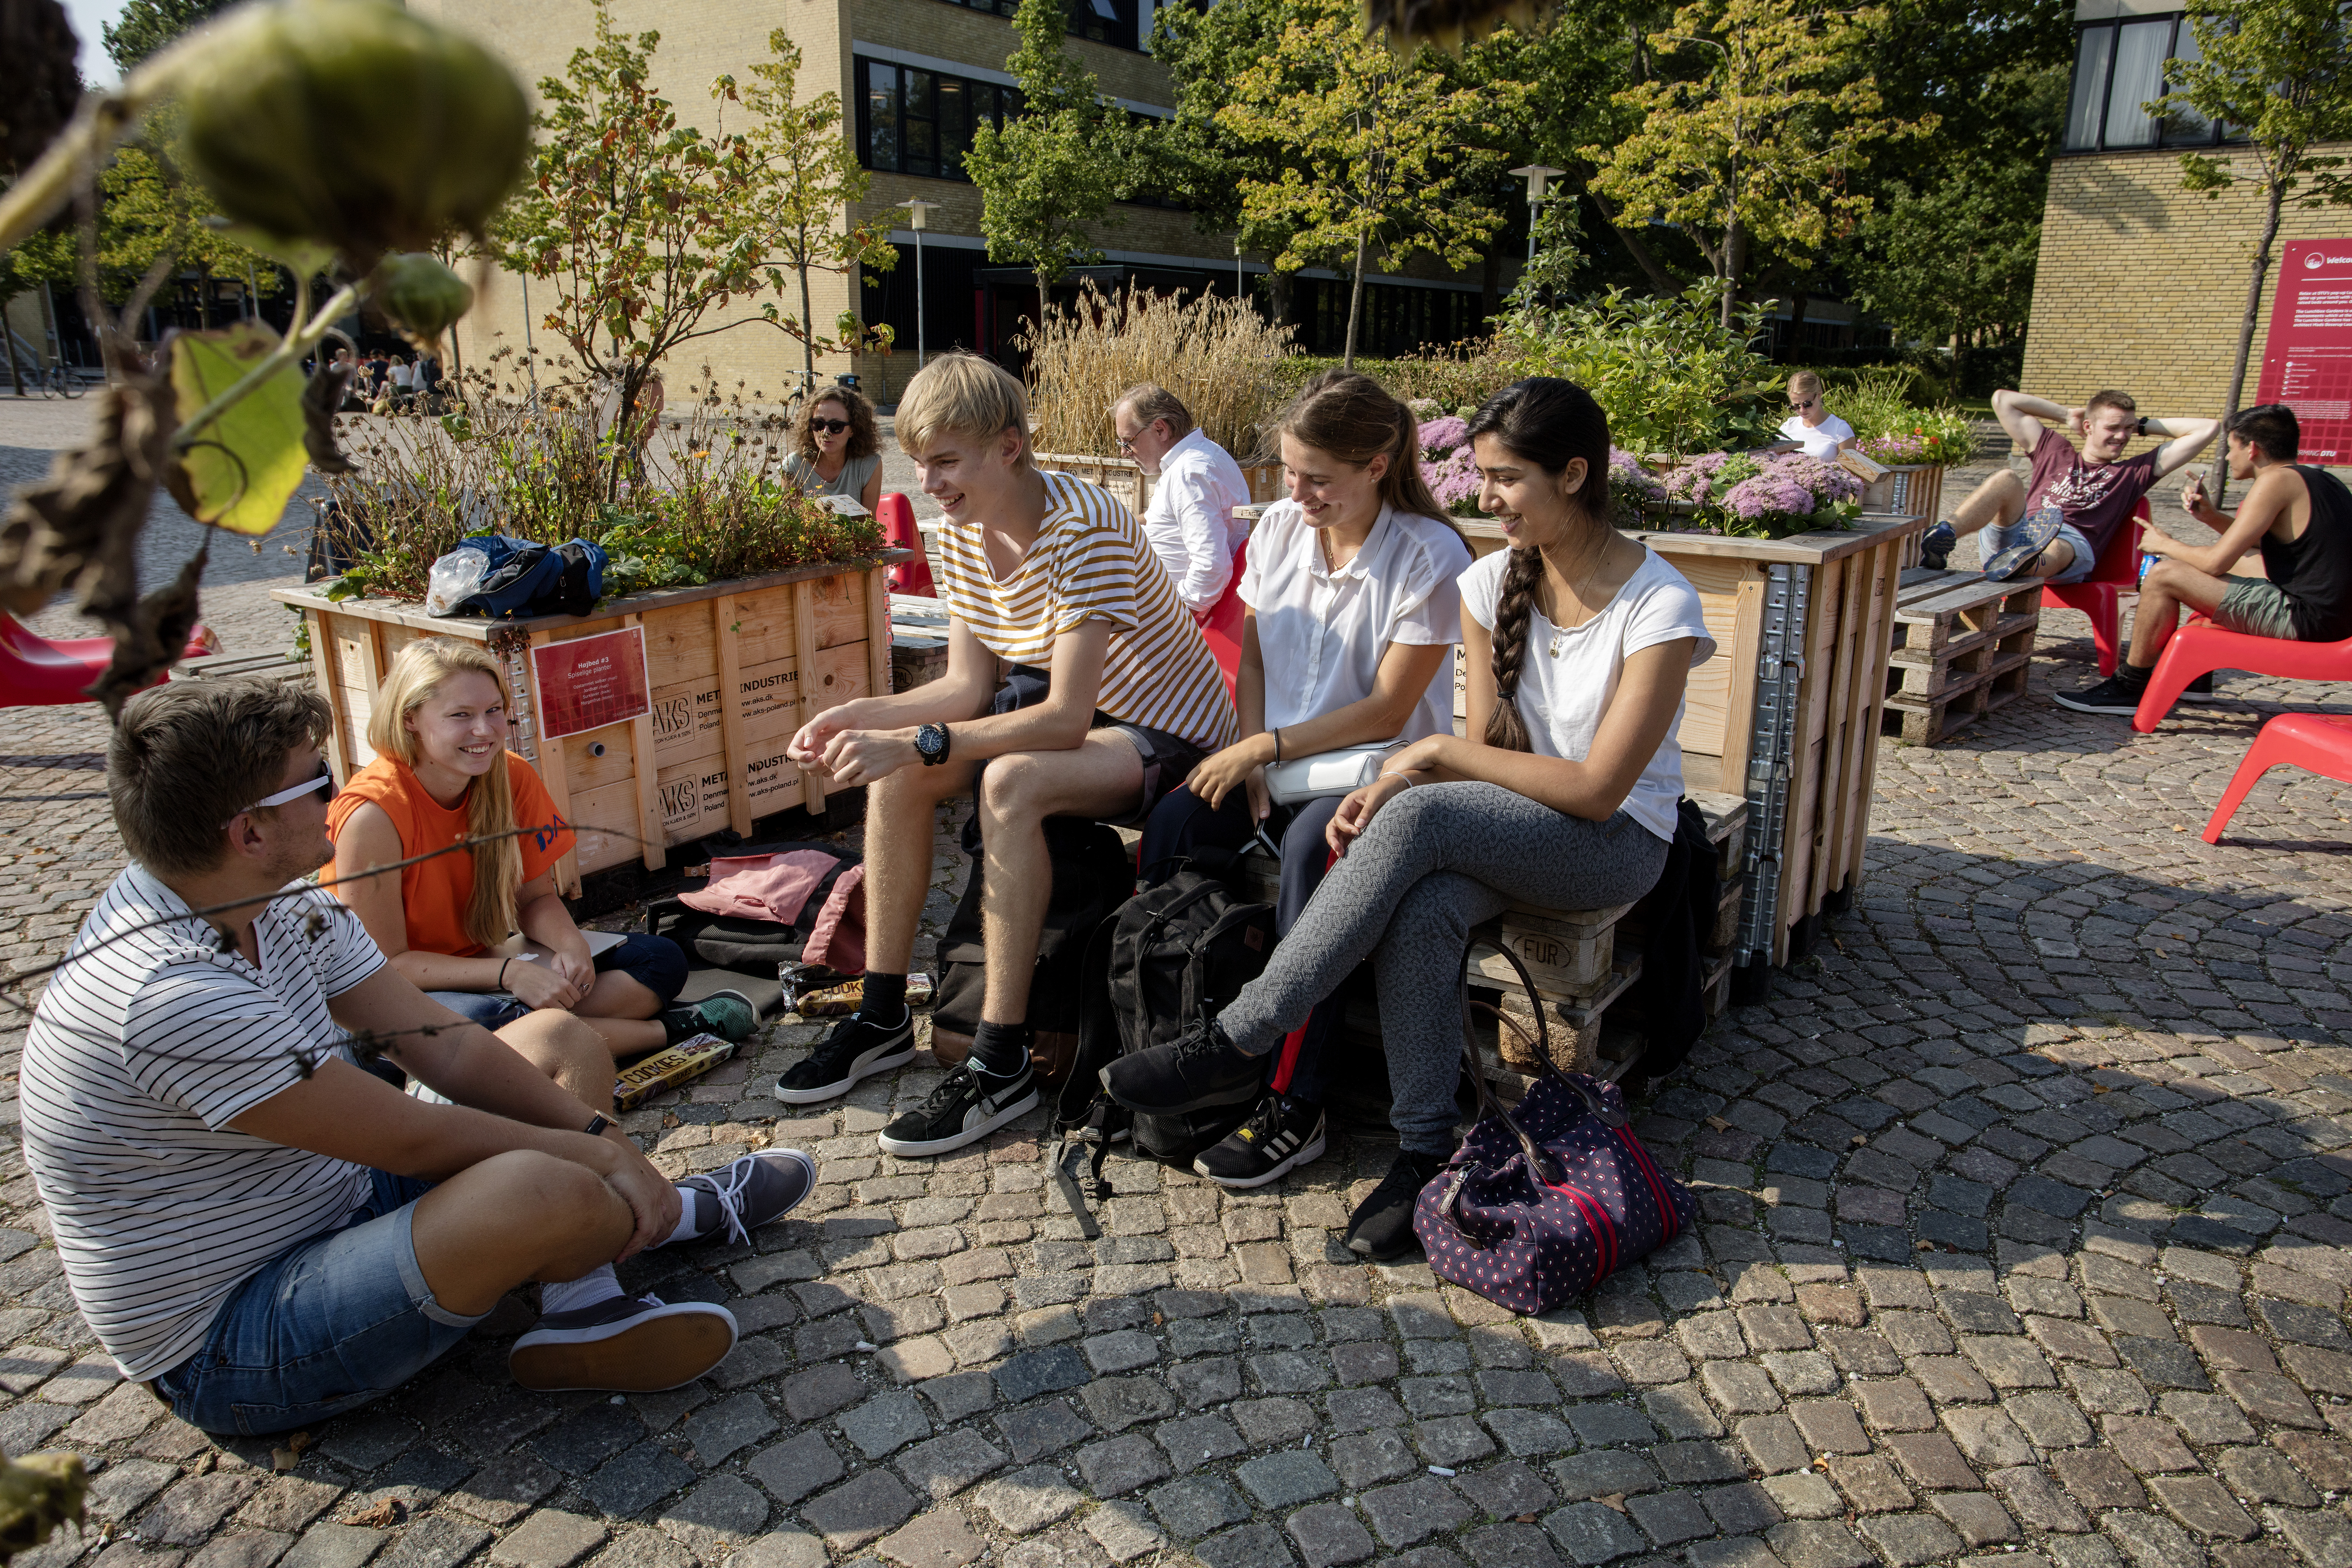 Students at DTU Lyngby